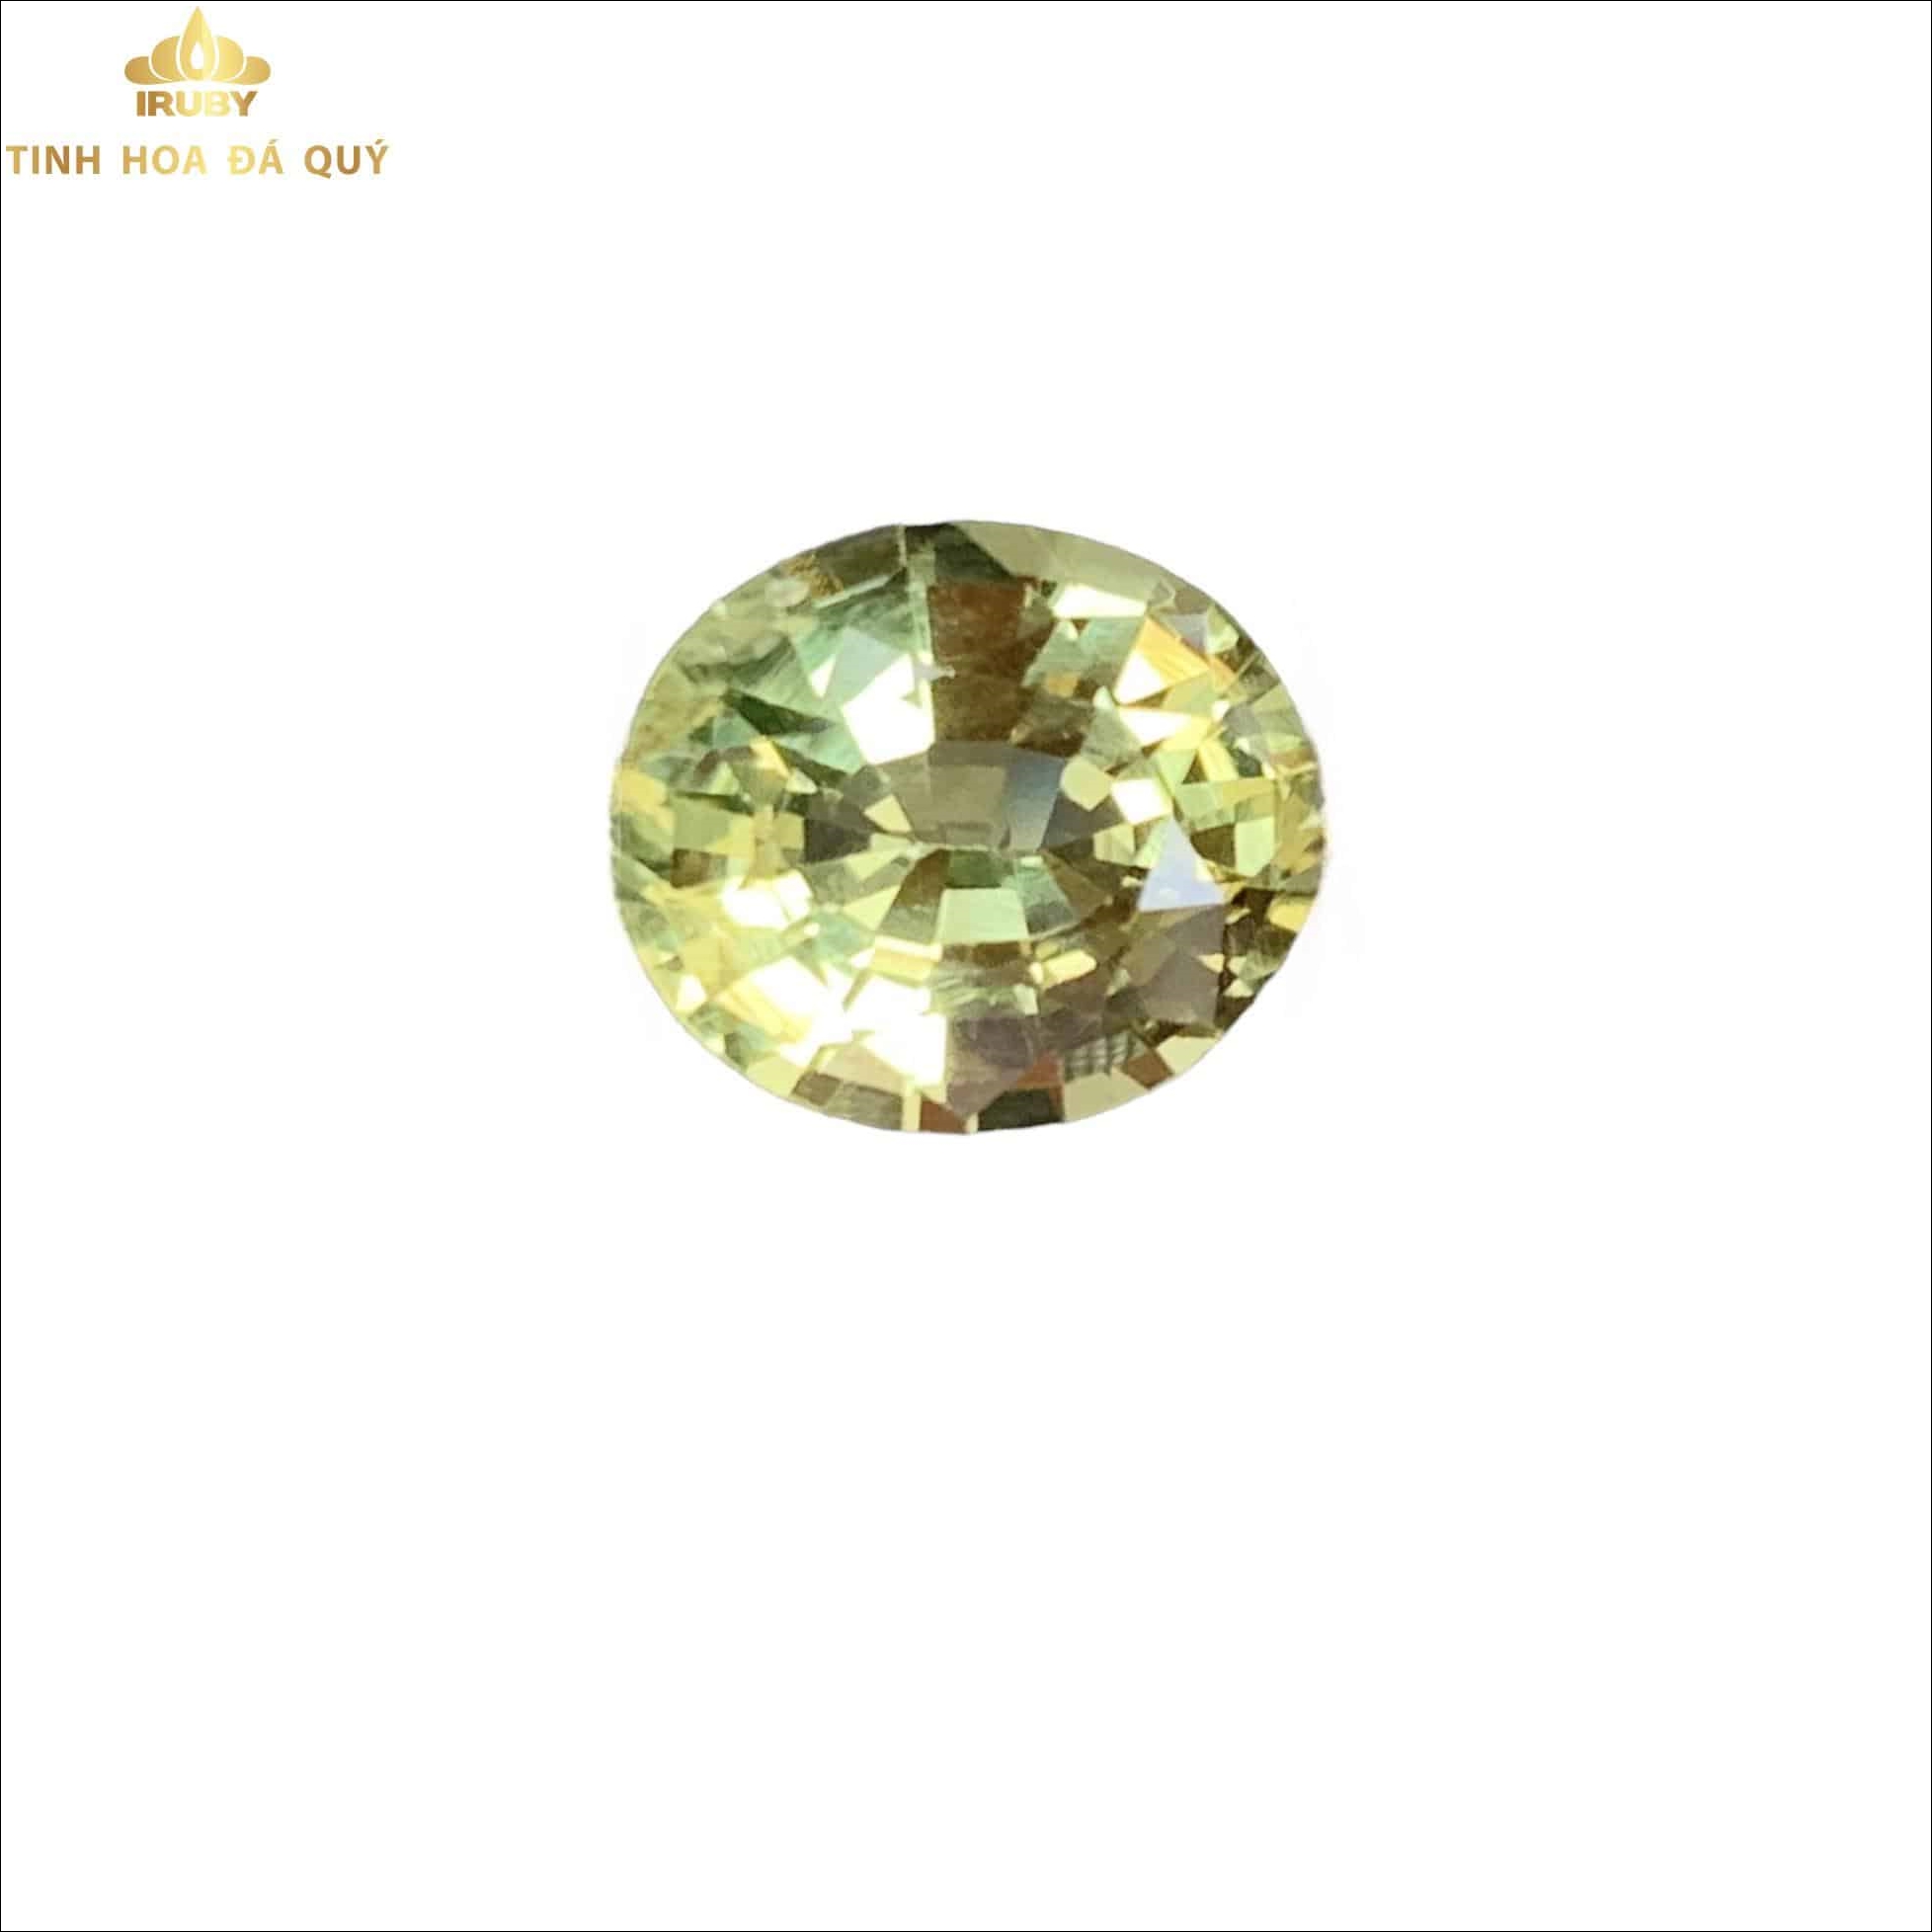 Viên Beryl vàng chanh đẹp tự nhiên 3,9ct - IRBR 221139